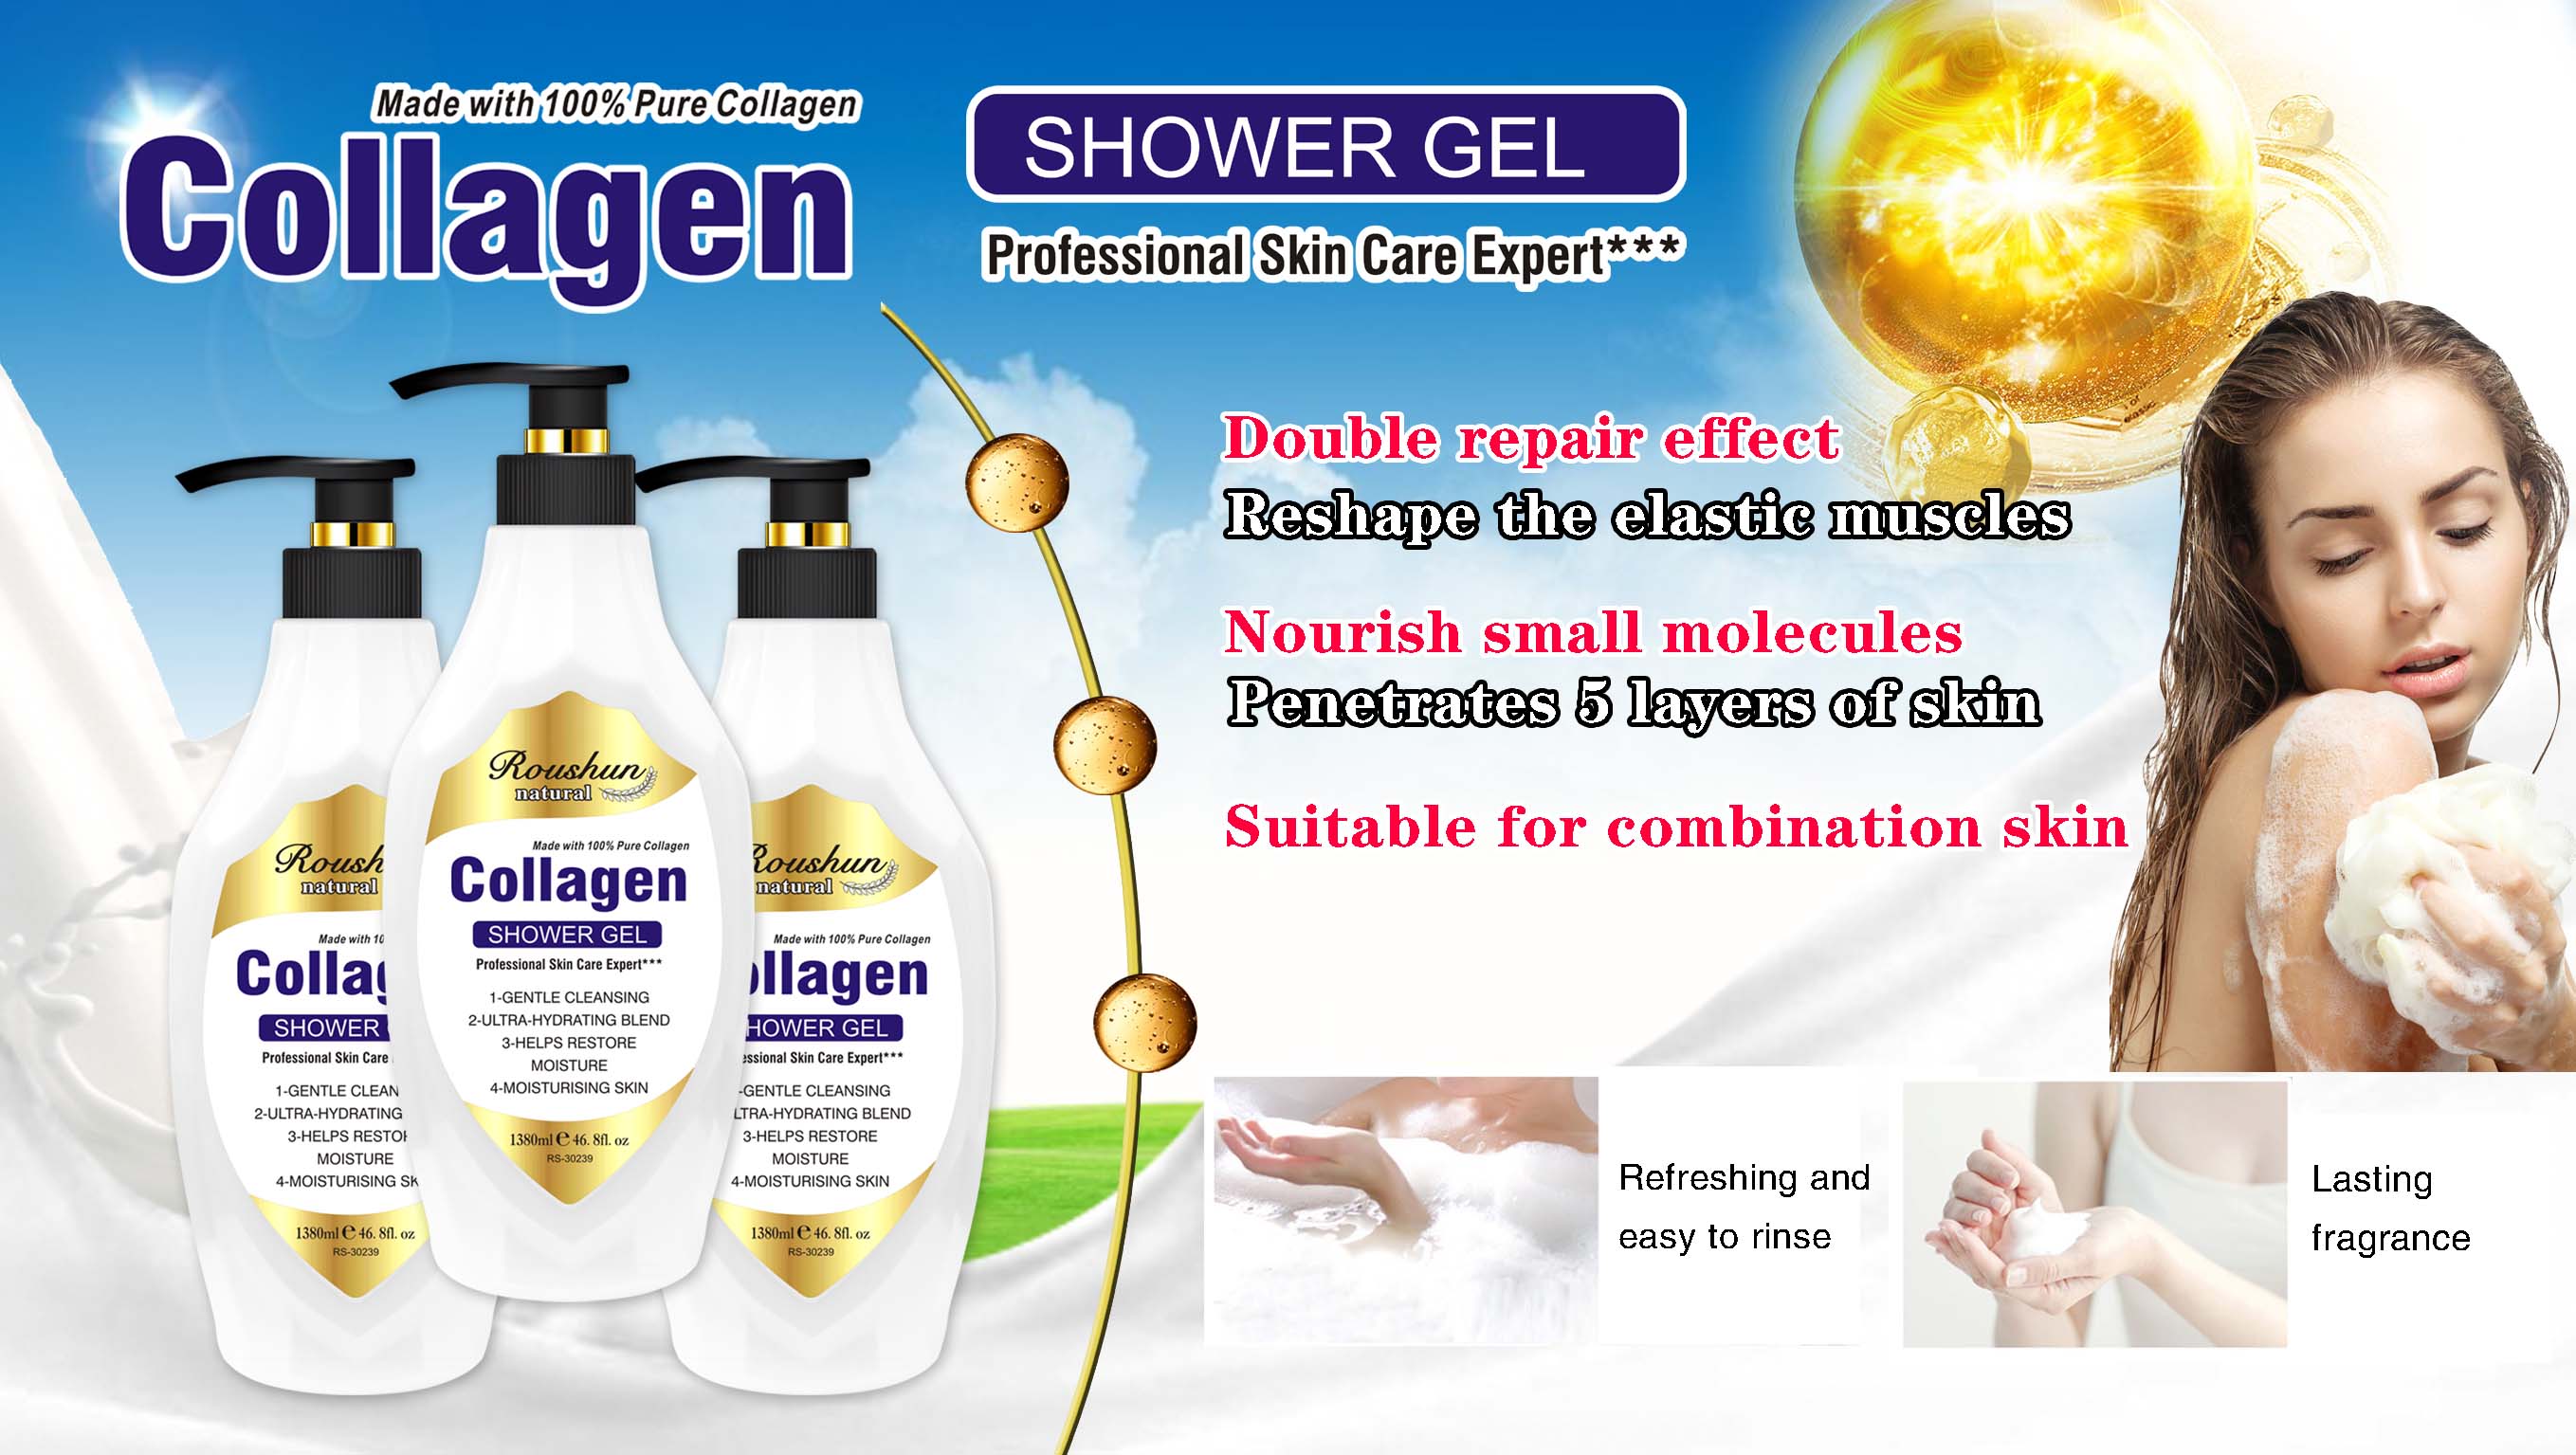 Roushun Collagen Body Wash Shower Gel For All Skin Type